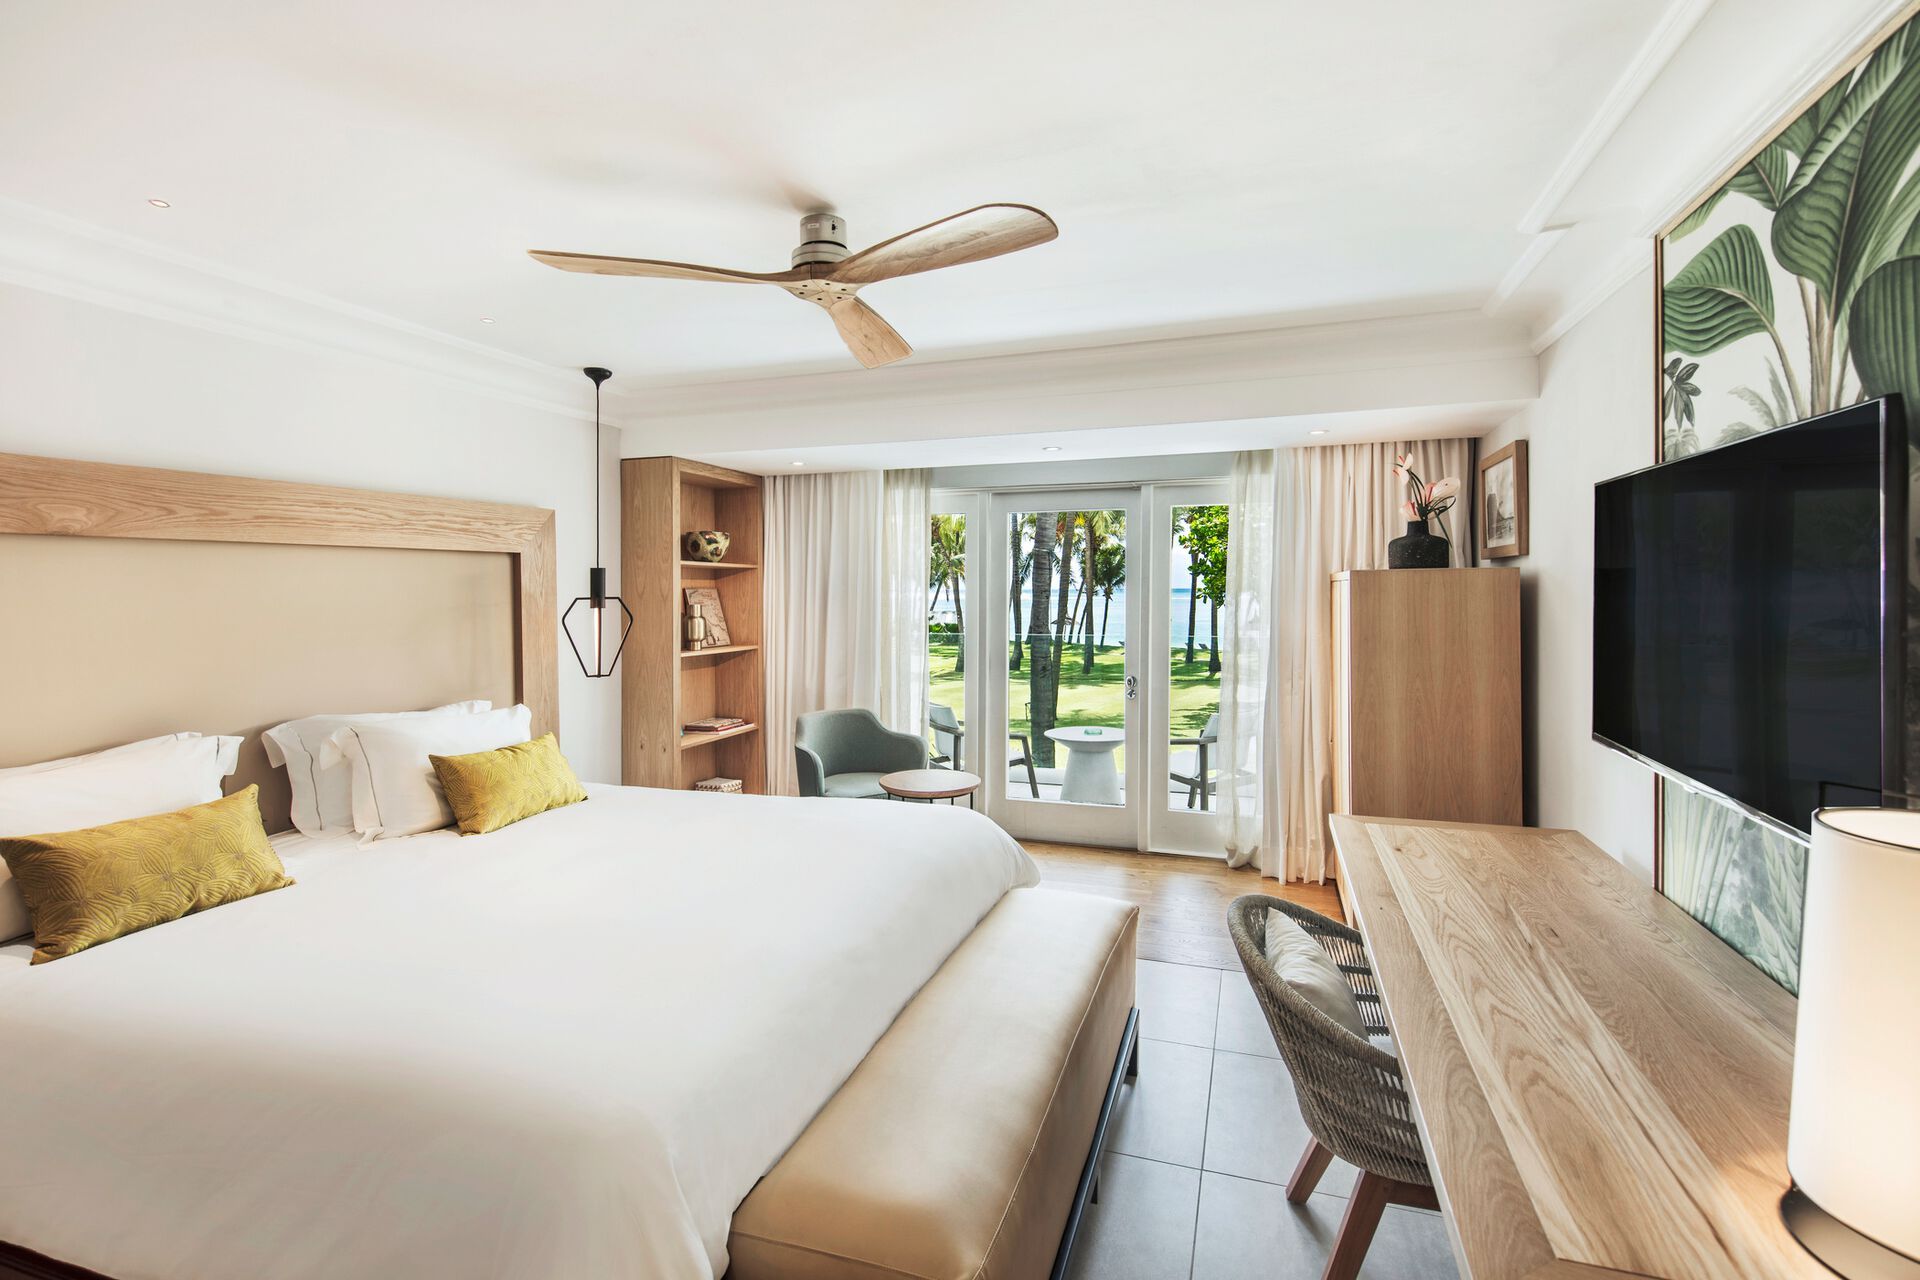 Maurice - Ile Maurice - Hotel Sugar Beach - A Sun Resort 5*